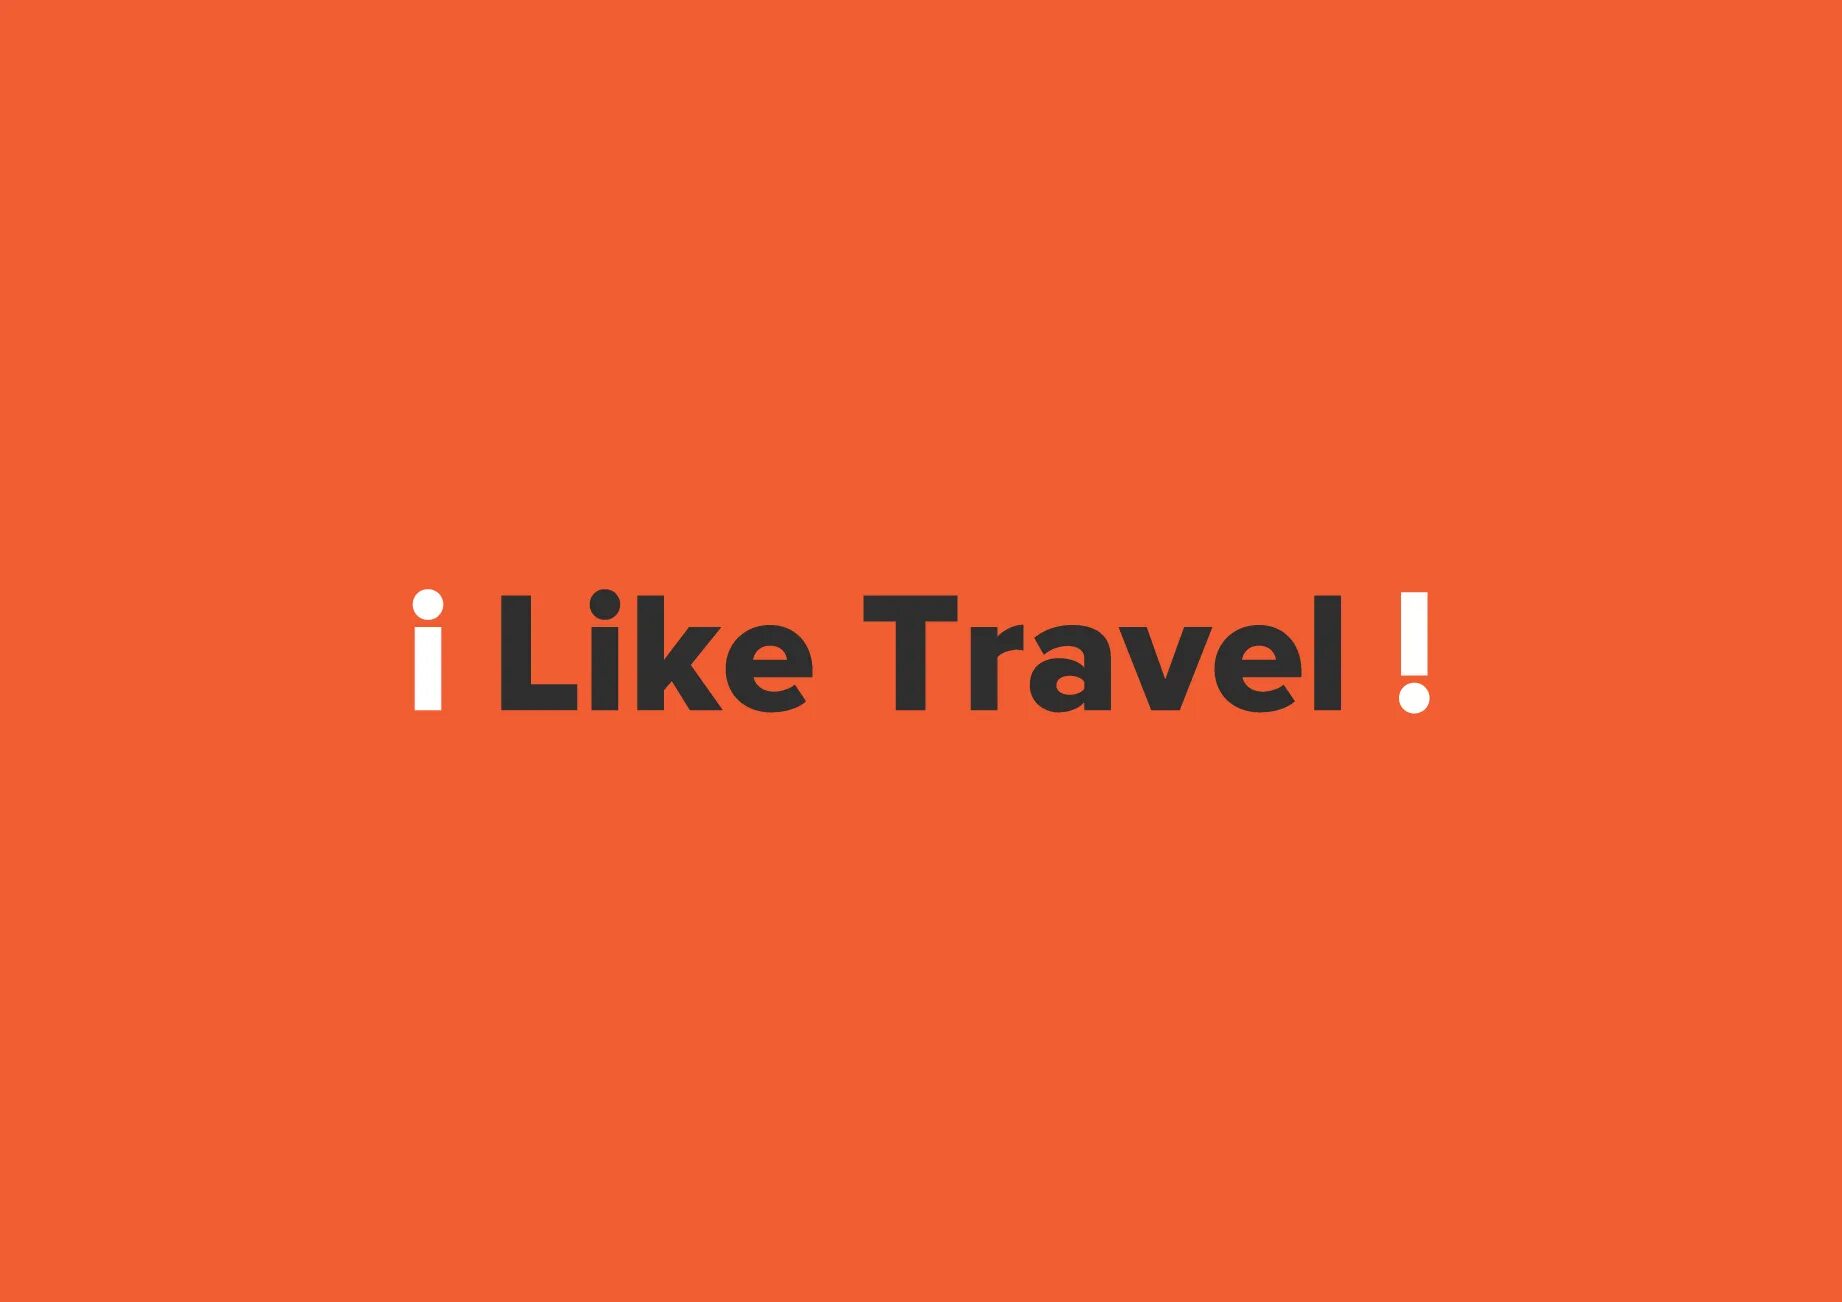 Travel like 12. Лайк Тревел. Like&Travel. I like to Travel.